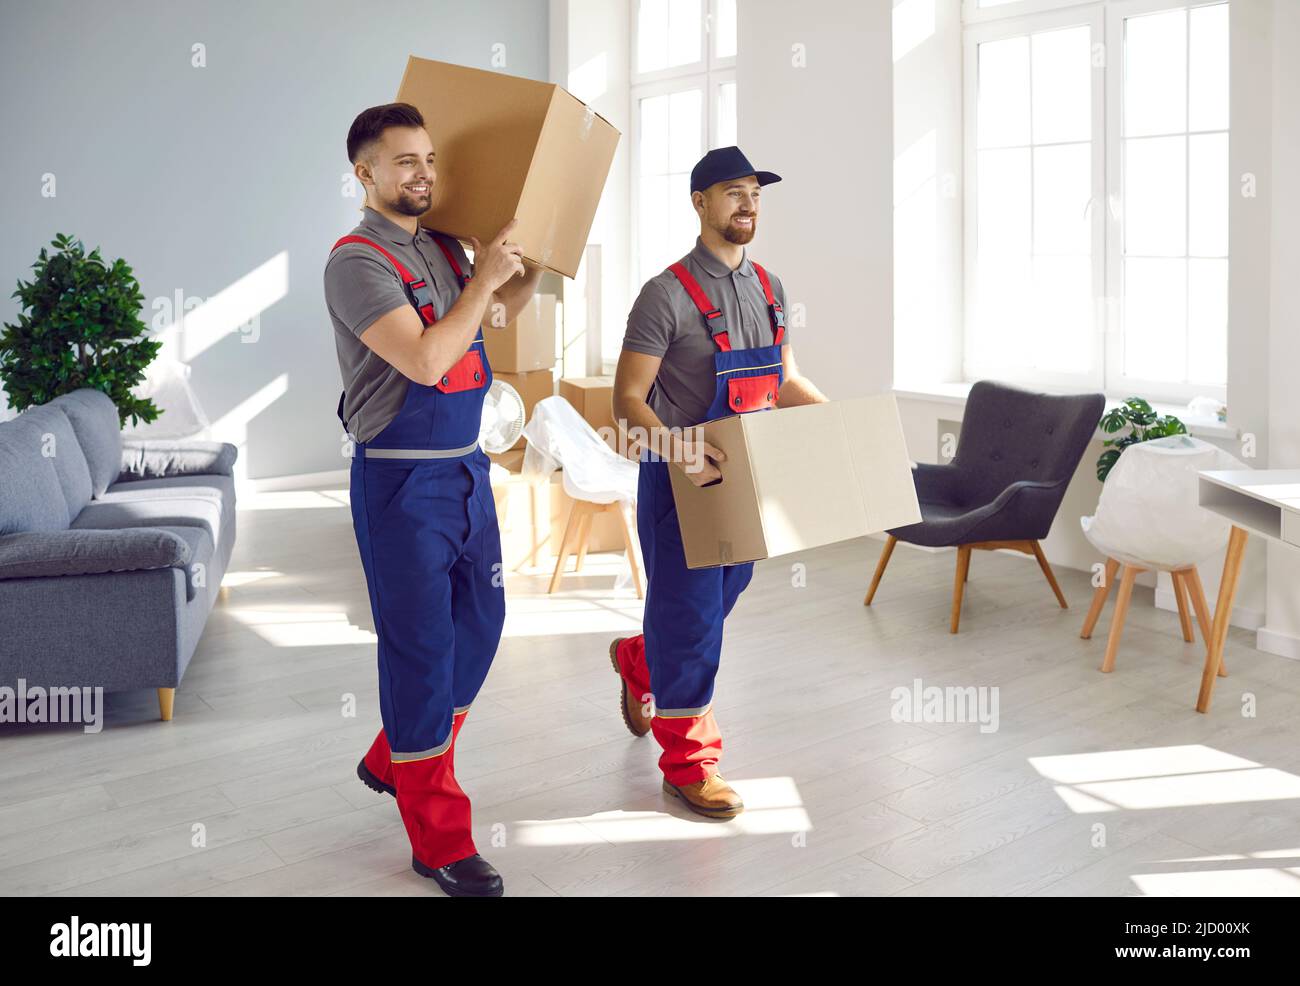 Zwei Arbeiter vom Umzug und Lieferservice, die Kartons aus dem Haus entfernen Stockfoto